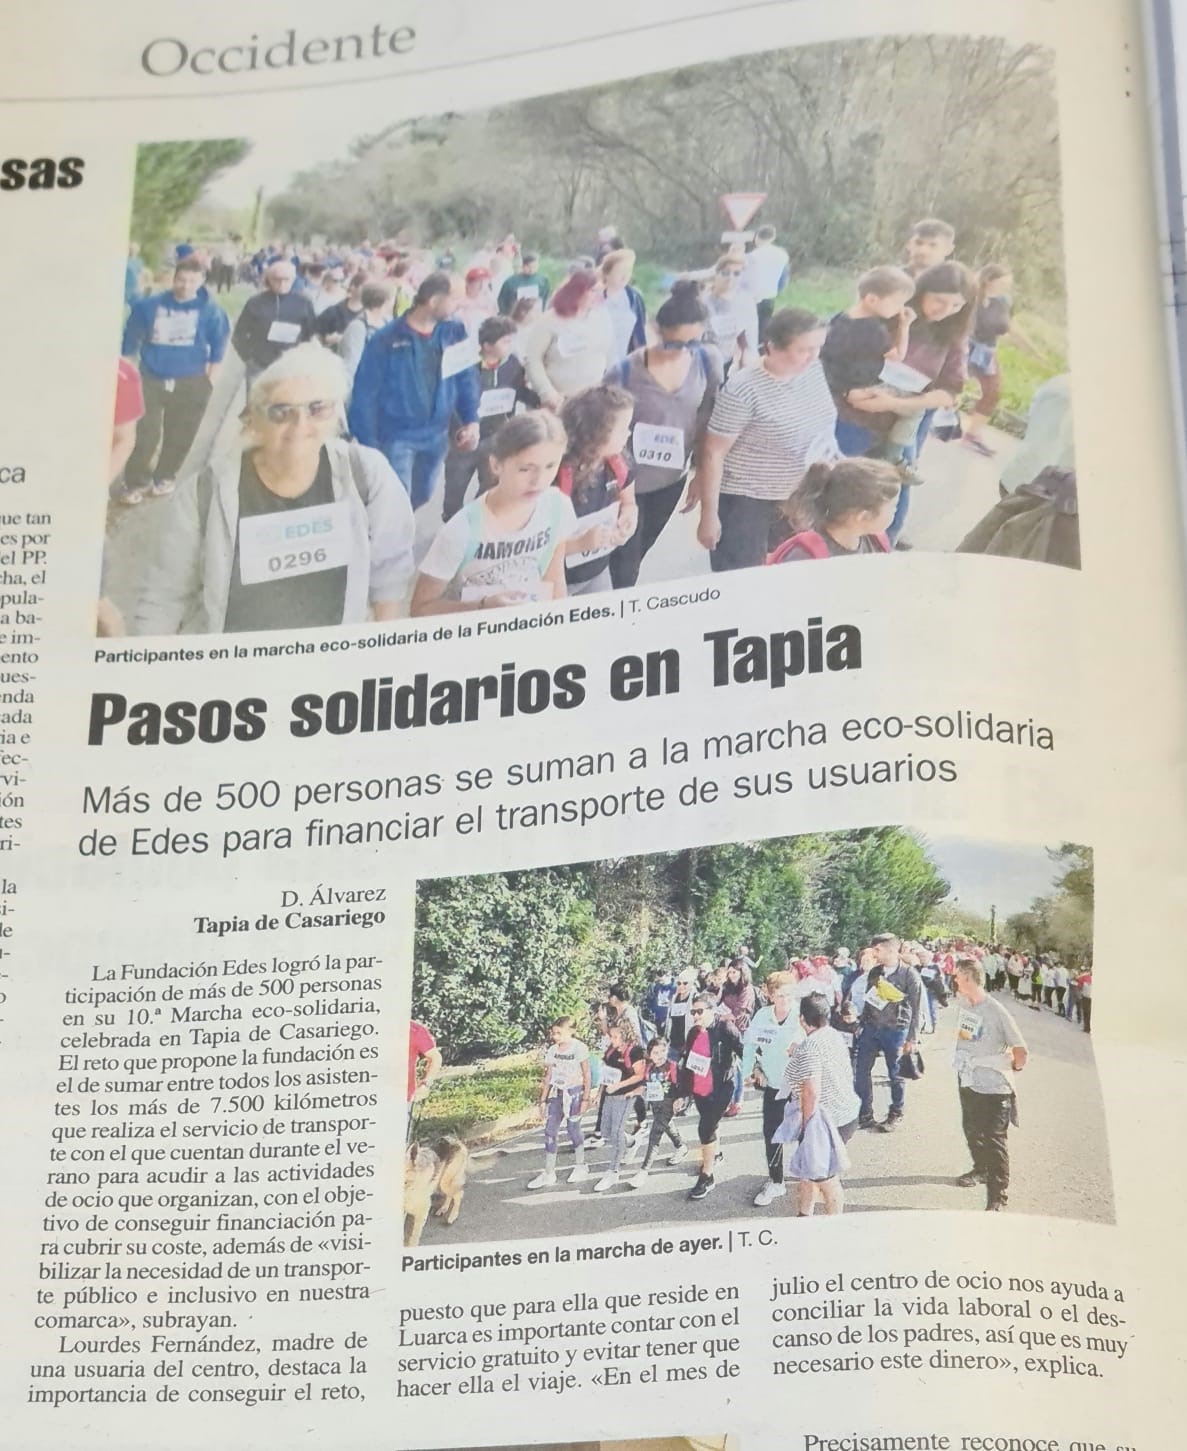 Página del periódico con la información de la marcha solidaria